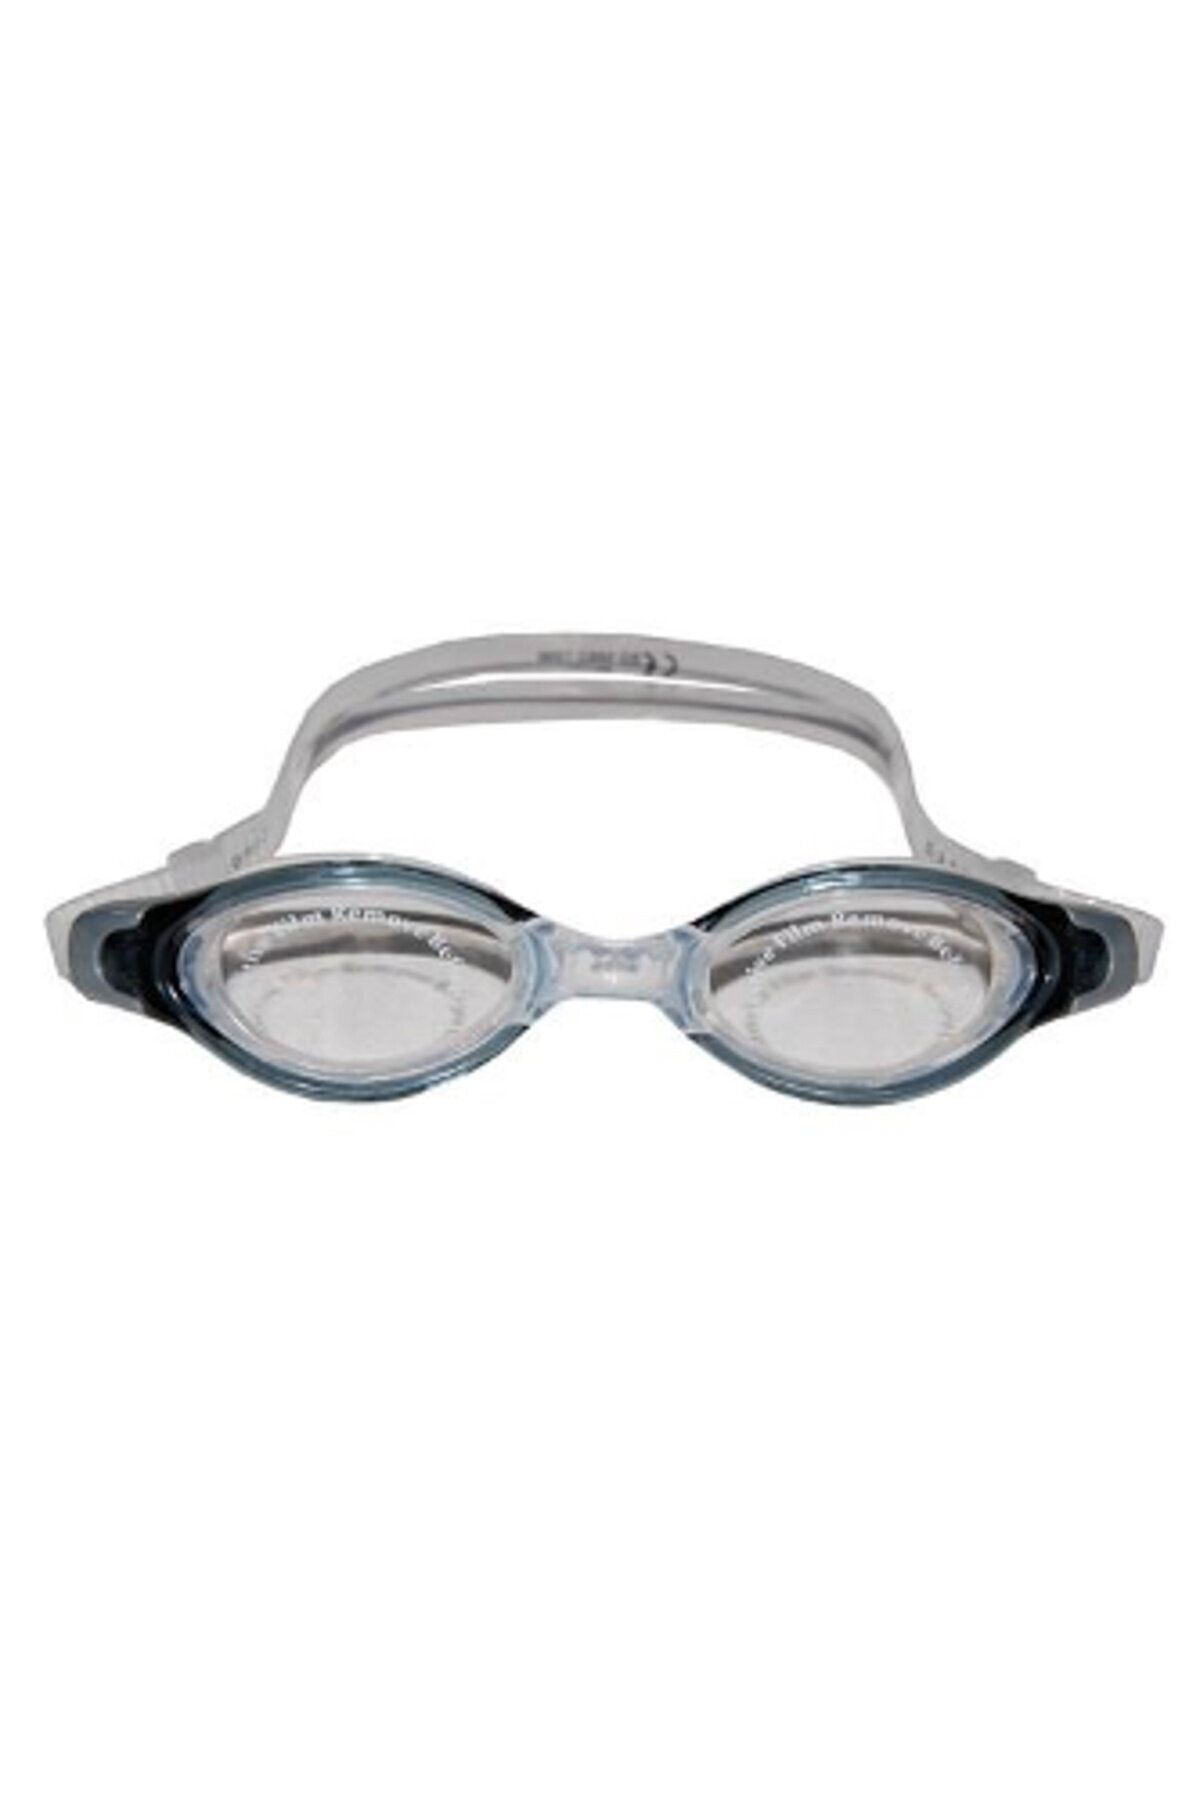 Avessa Yetişkin Yüzücü Gözlüğü - Deniz Gözlüğü - Havuz Gözlüğü - Kadın Erkek Bay Bayan Büyük Gözlük Gözlüğü